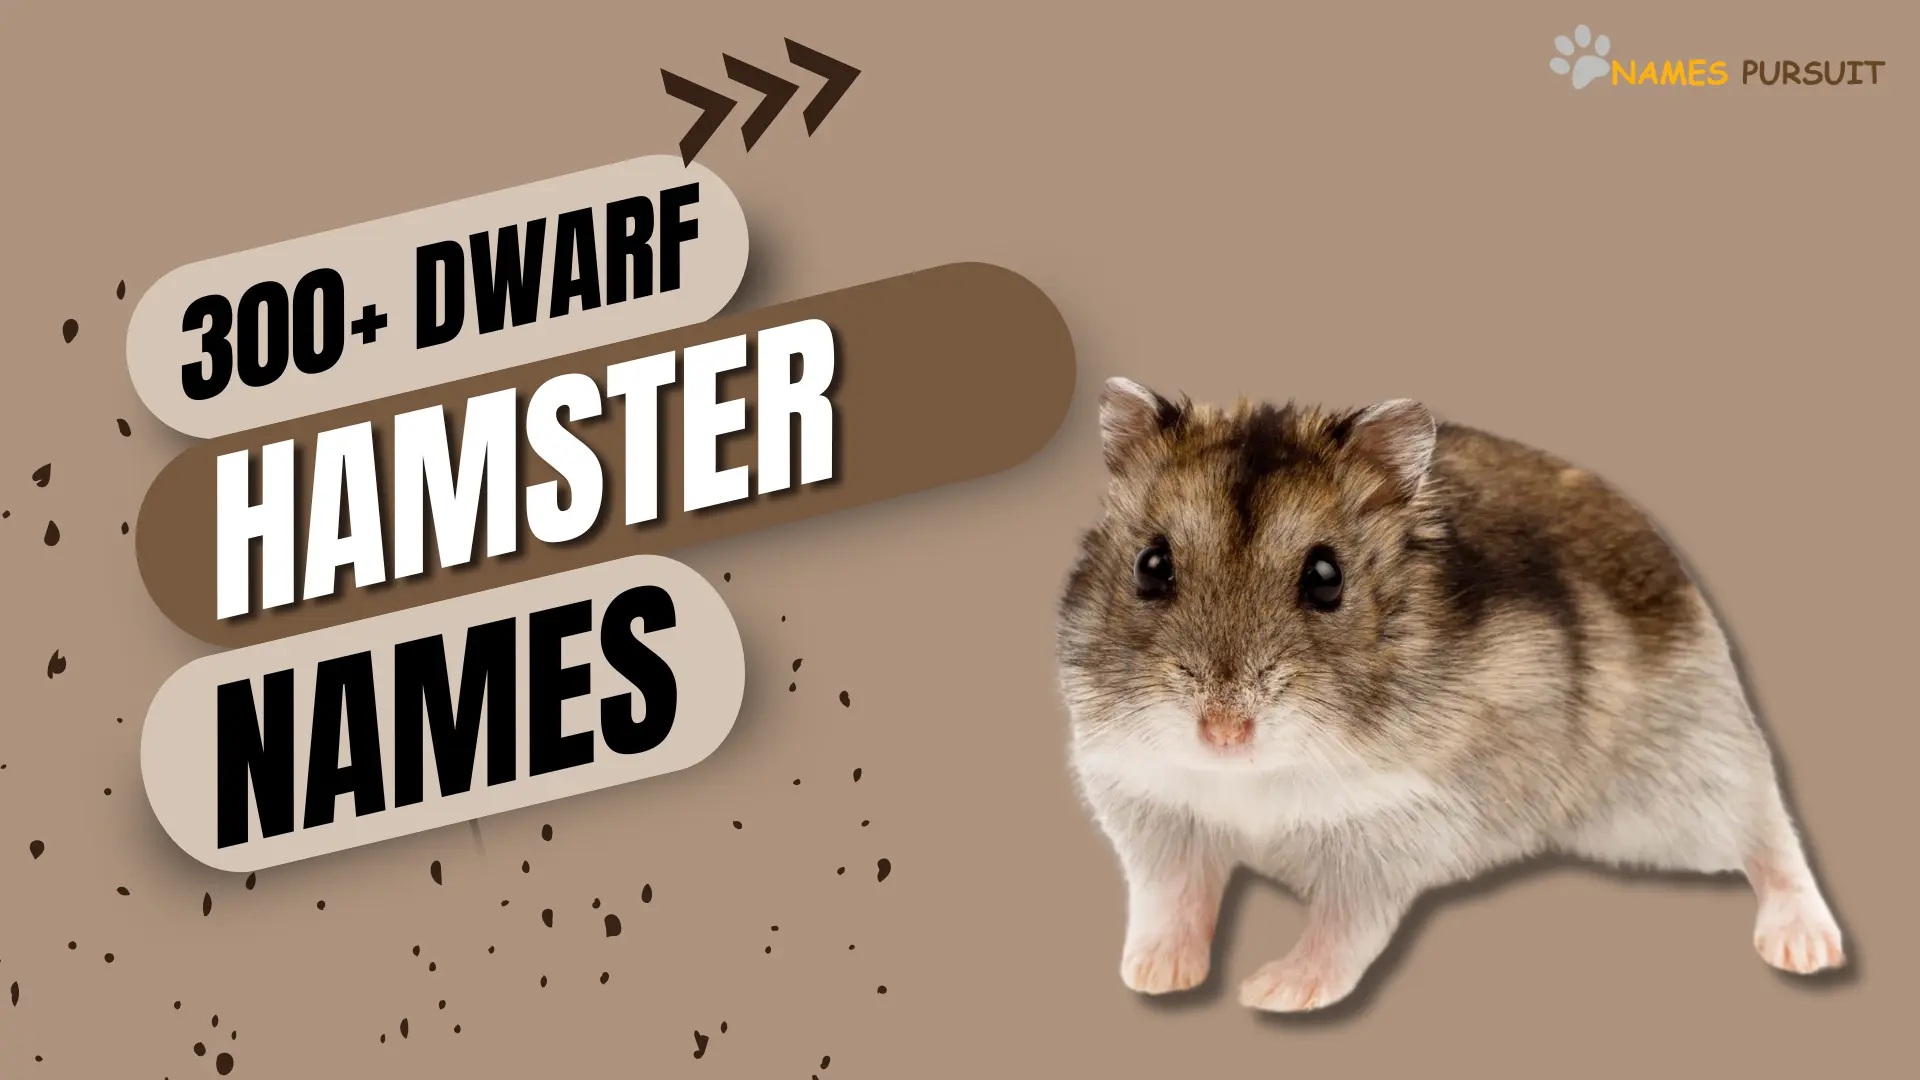 300+ Dwarf Hamster Names